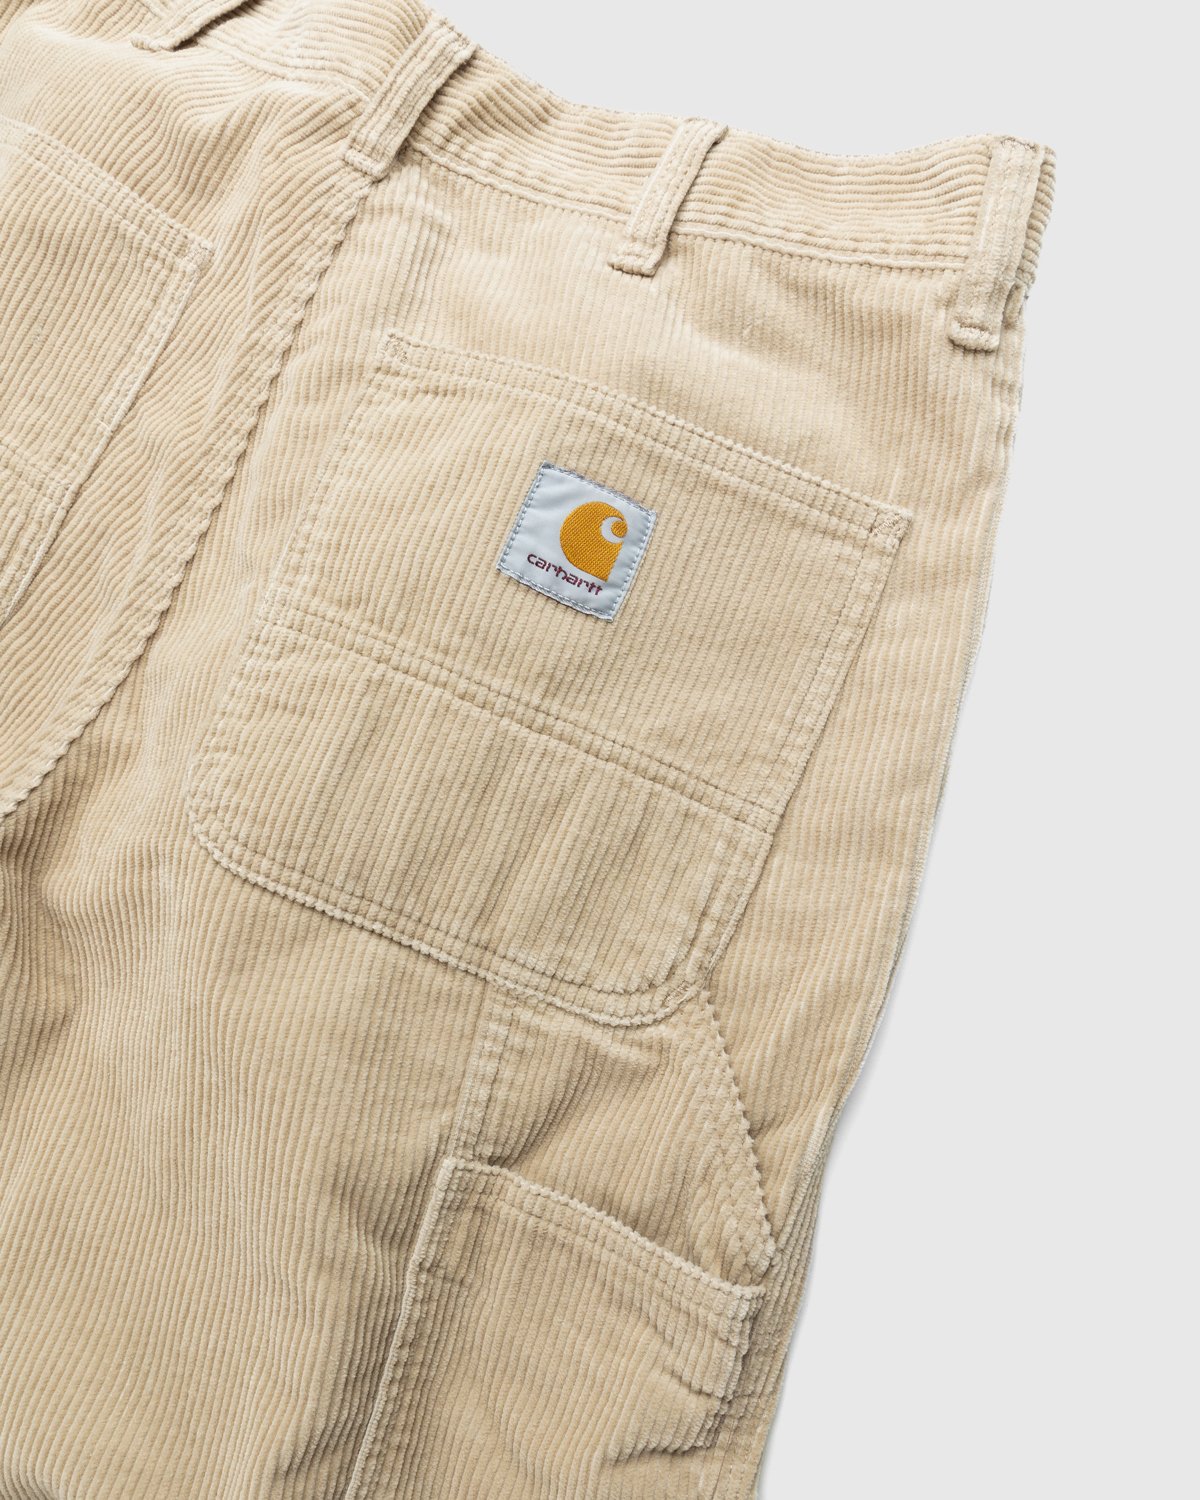 Carhartt WIP - Ruck Single Knee Pant Beige - Clothing - Brown - Image 3